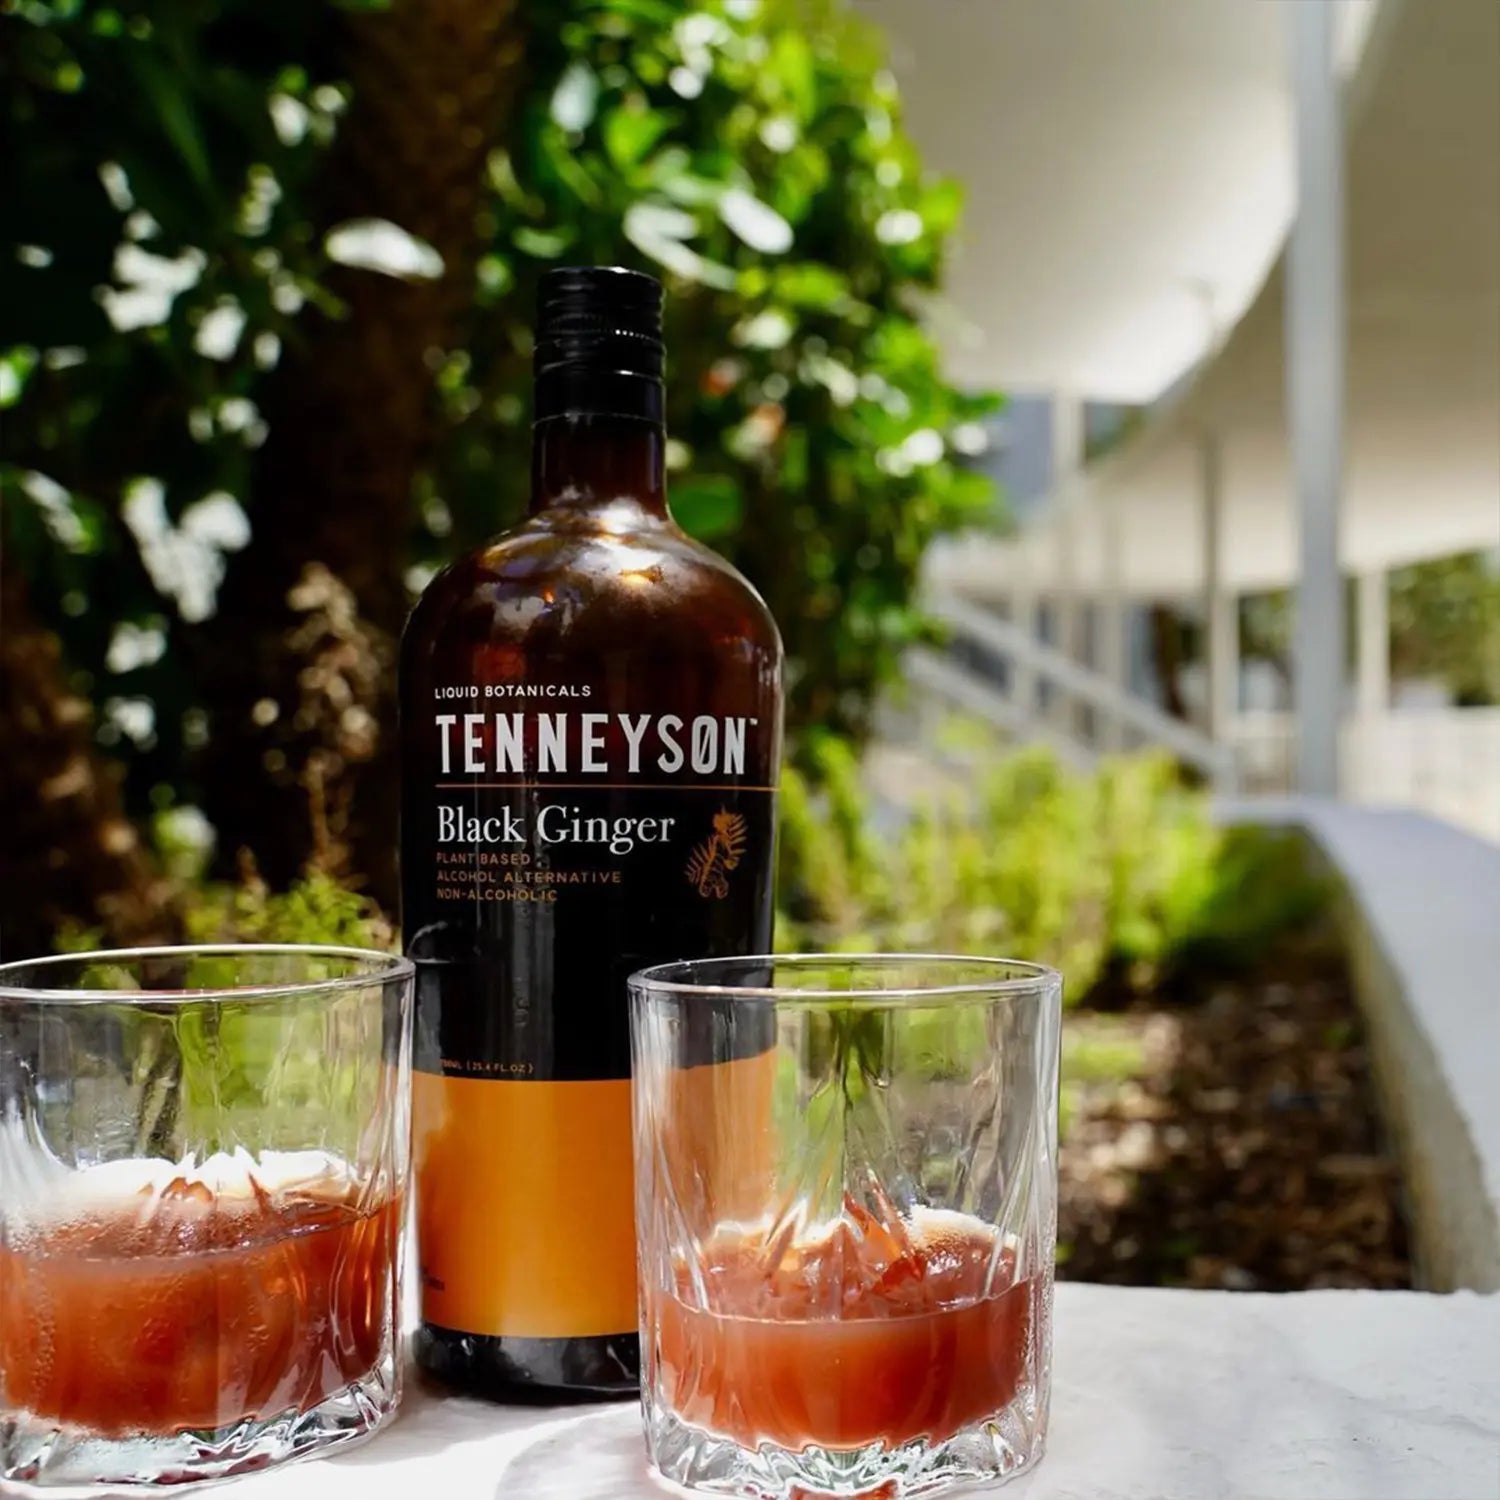 Tenneyson non-alcoholic spirit